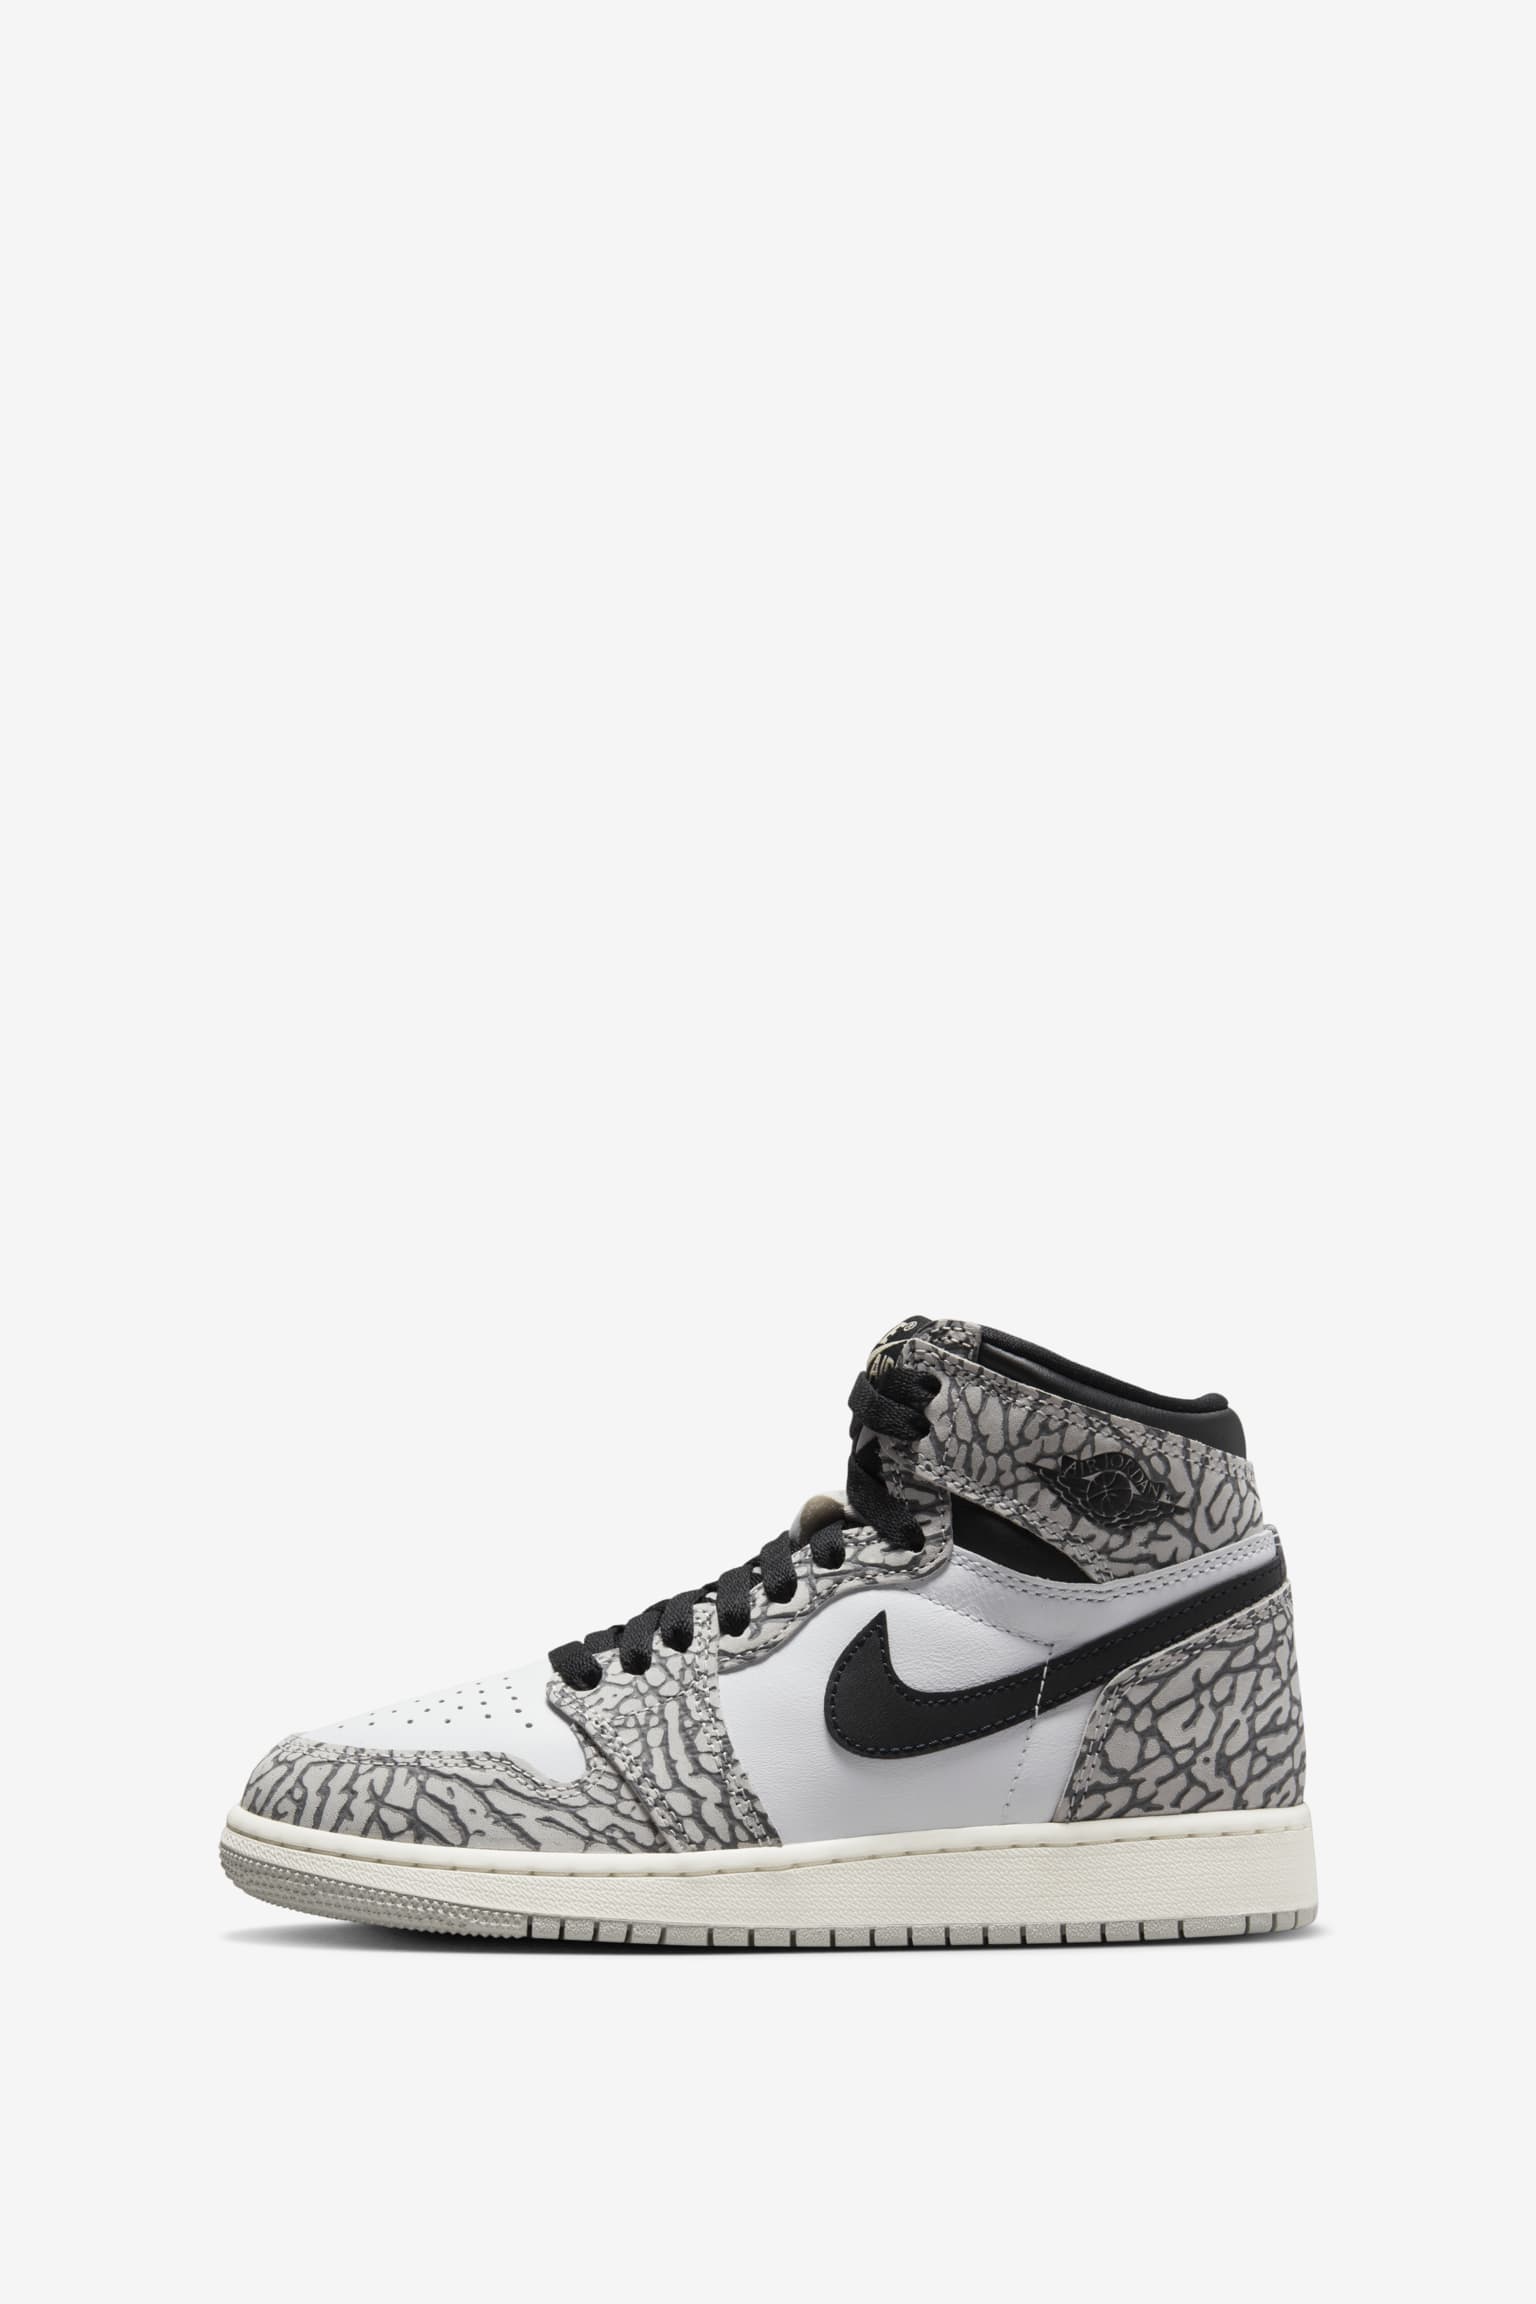 Nike Air Jordan 1 White Cement 27.5cm